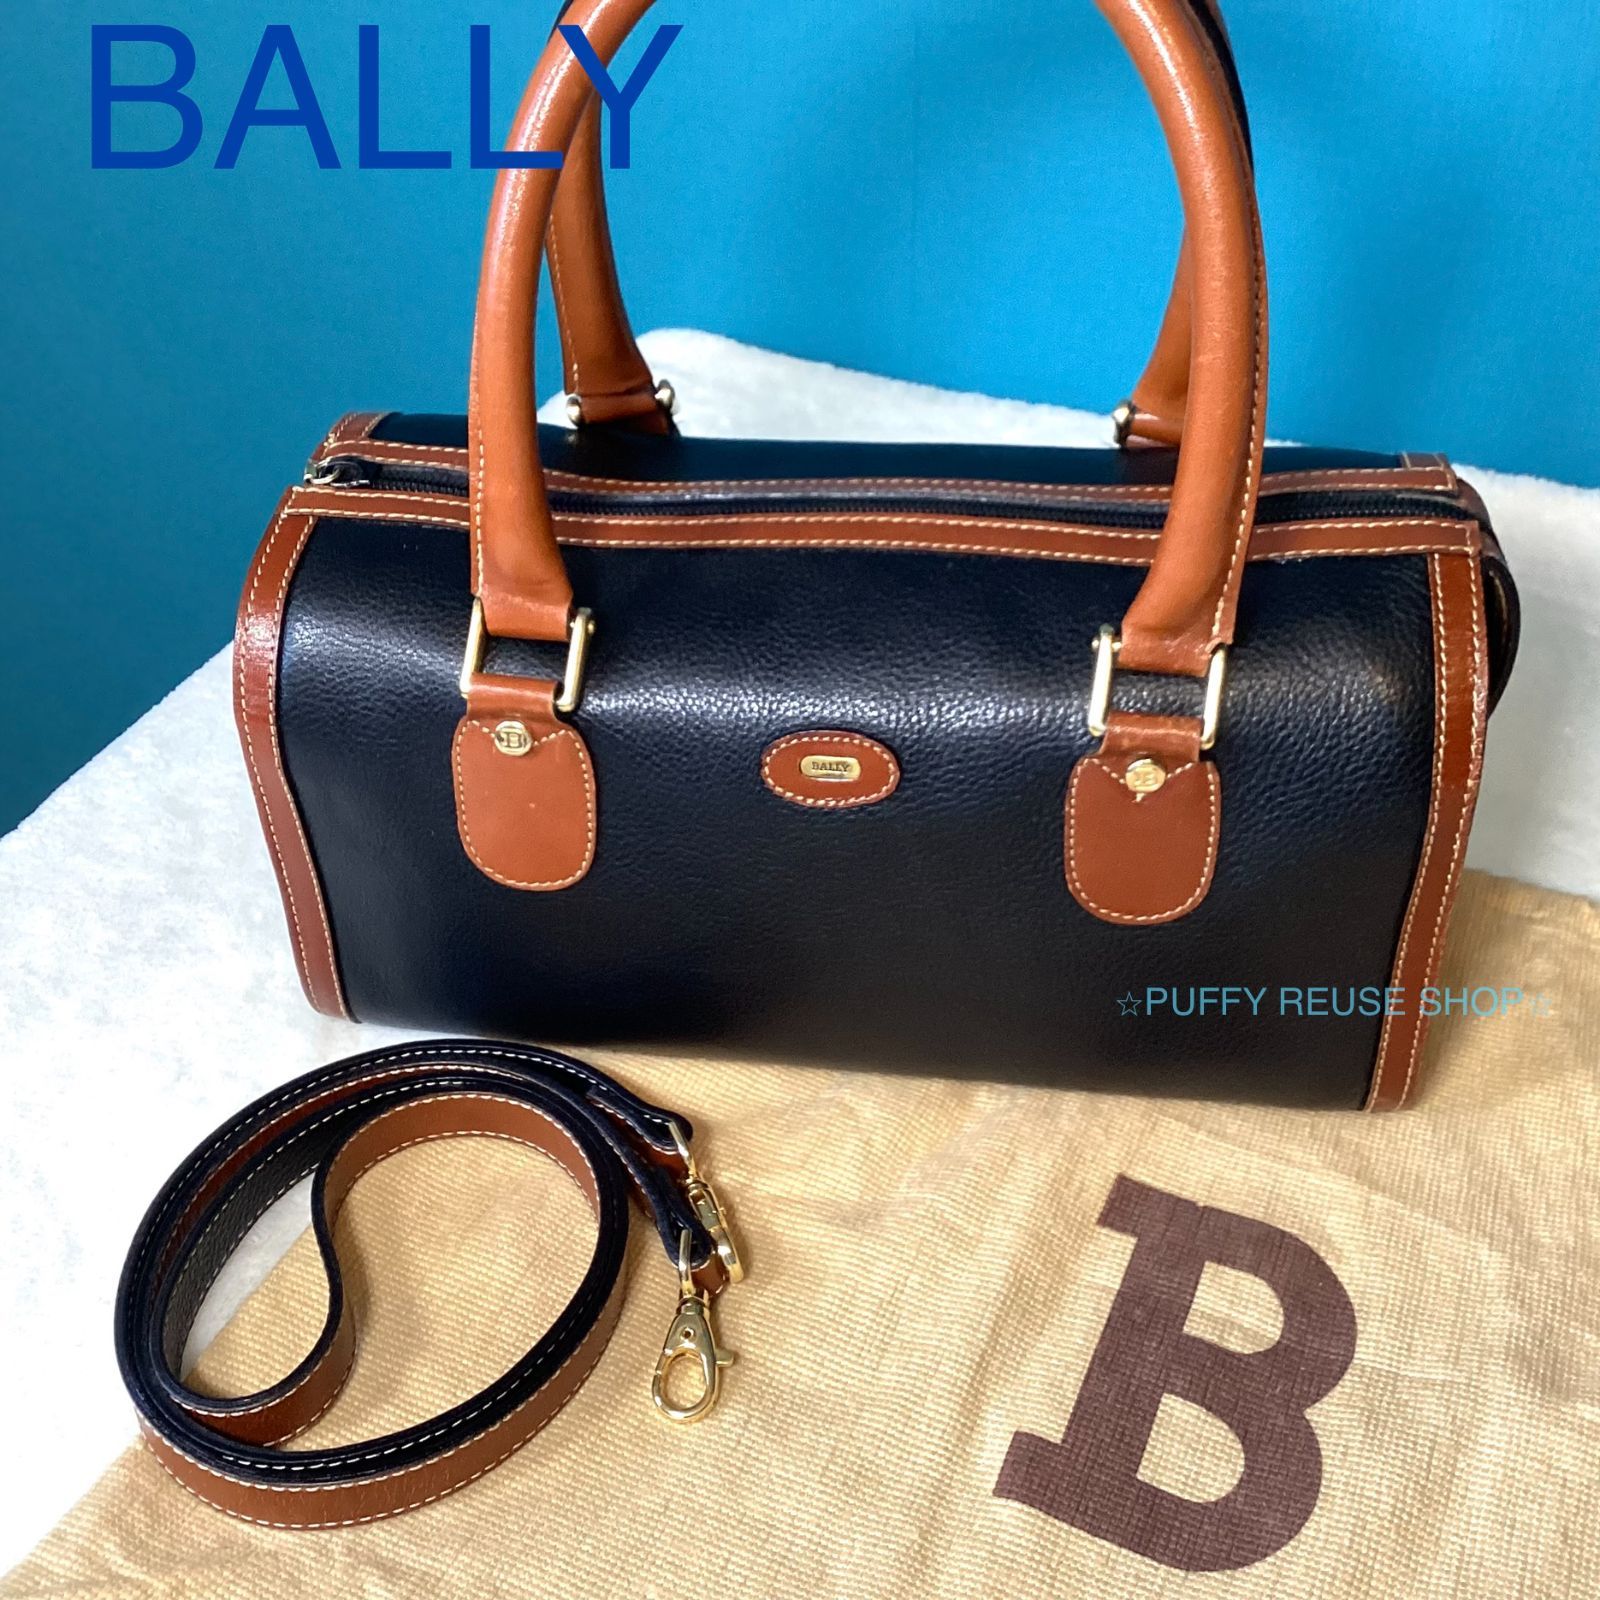 バリー BALLY ミニボストンバッグ 保存袋付き ハンドバッグ レザー - ボストンバッグ